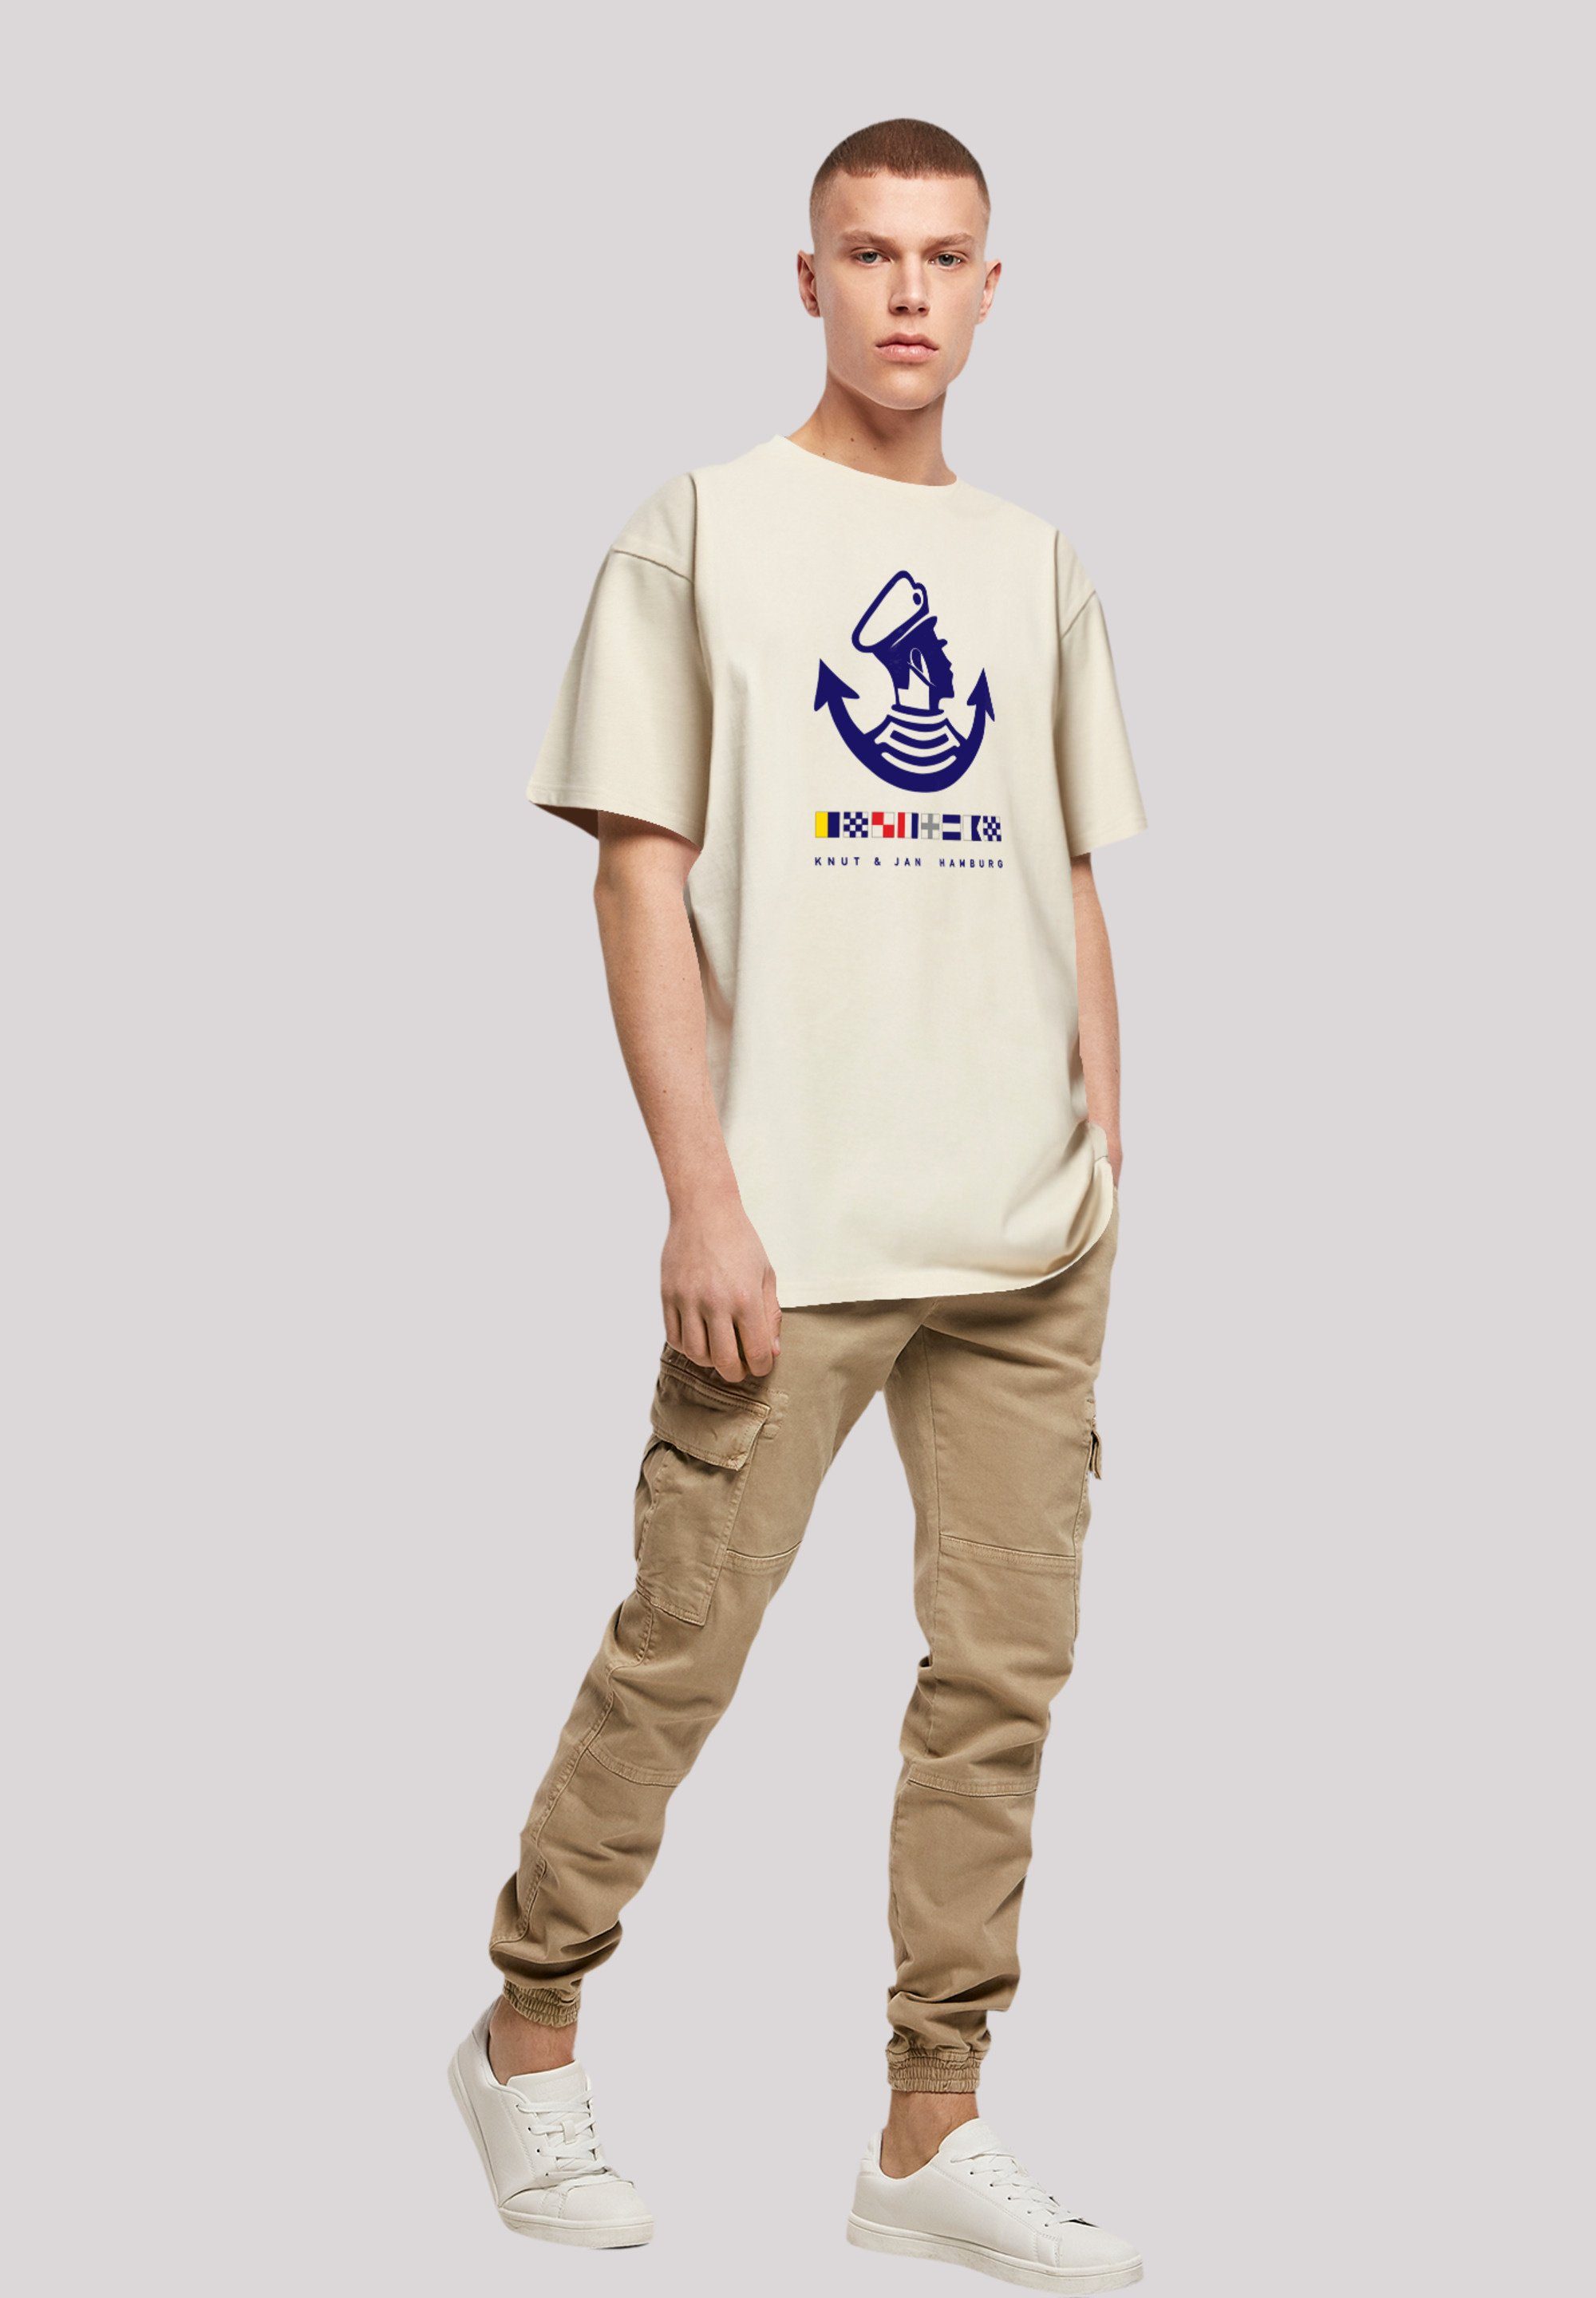 Jan sand Knut & Hamburg Logo Print F4NT4STIC T-Shirt